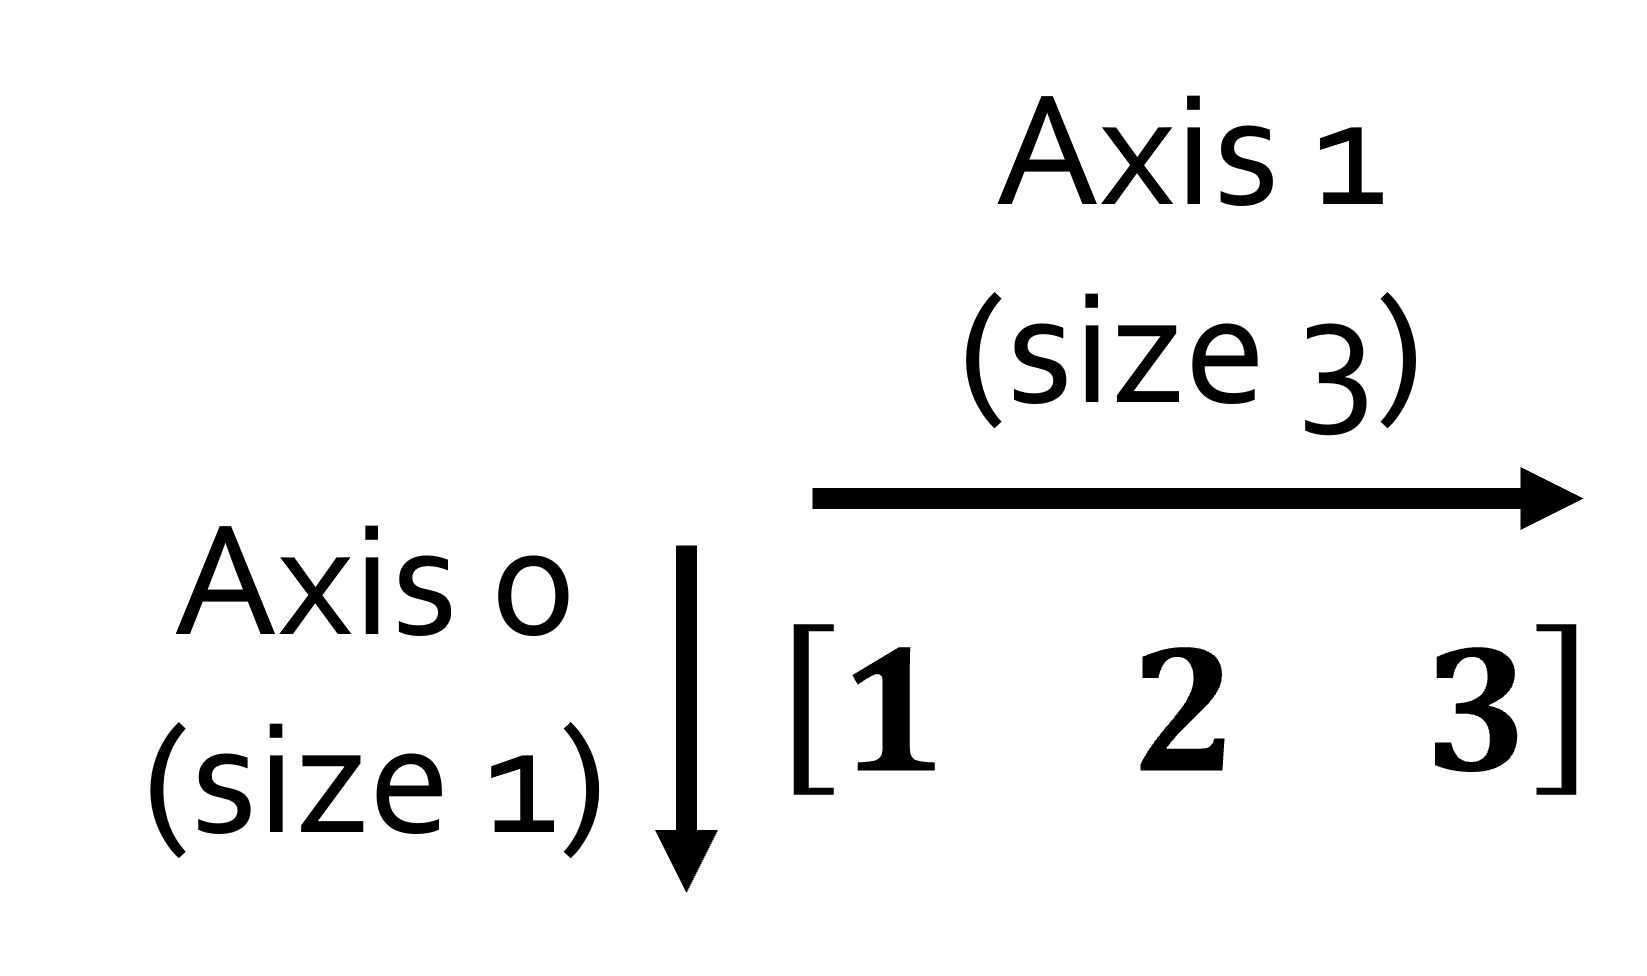 2D np.array (1x3)